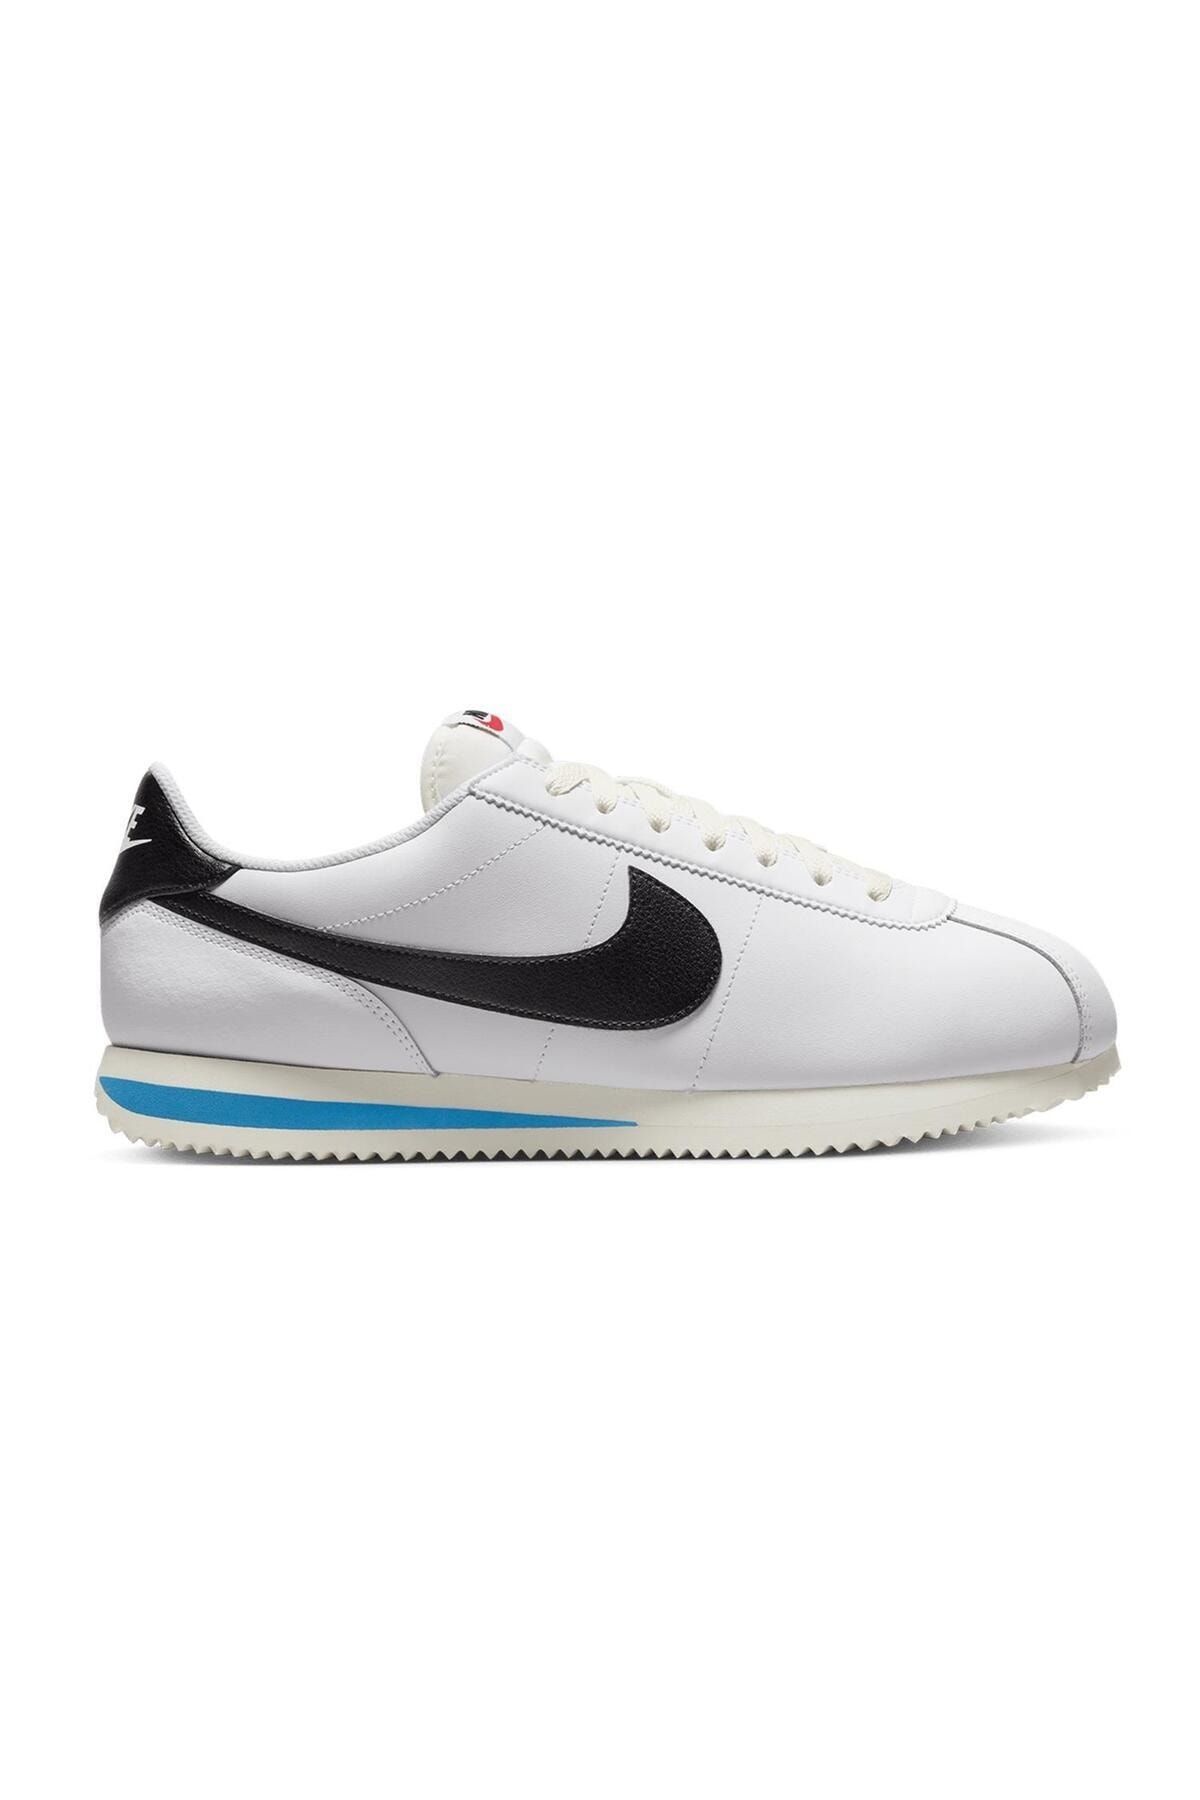 Nike Cortez Sneaker Erkek Ayakkabı DM4044-100